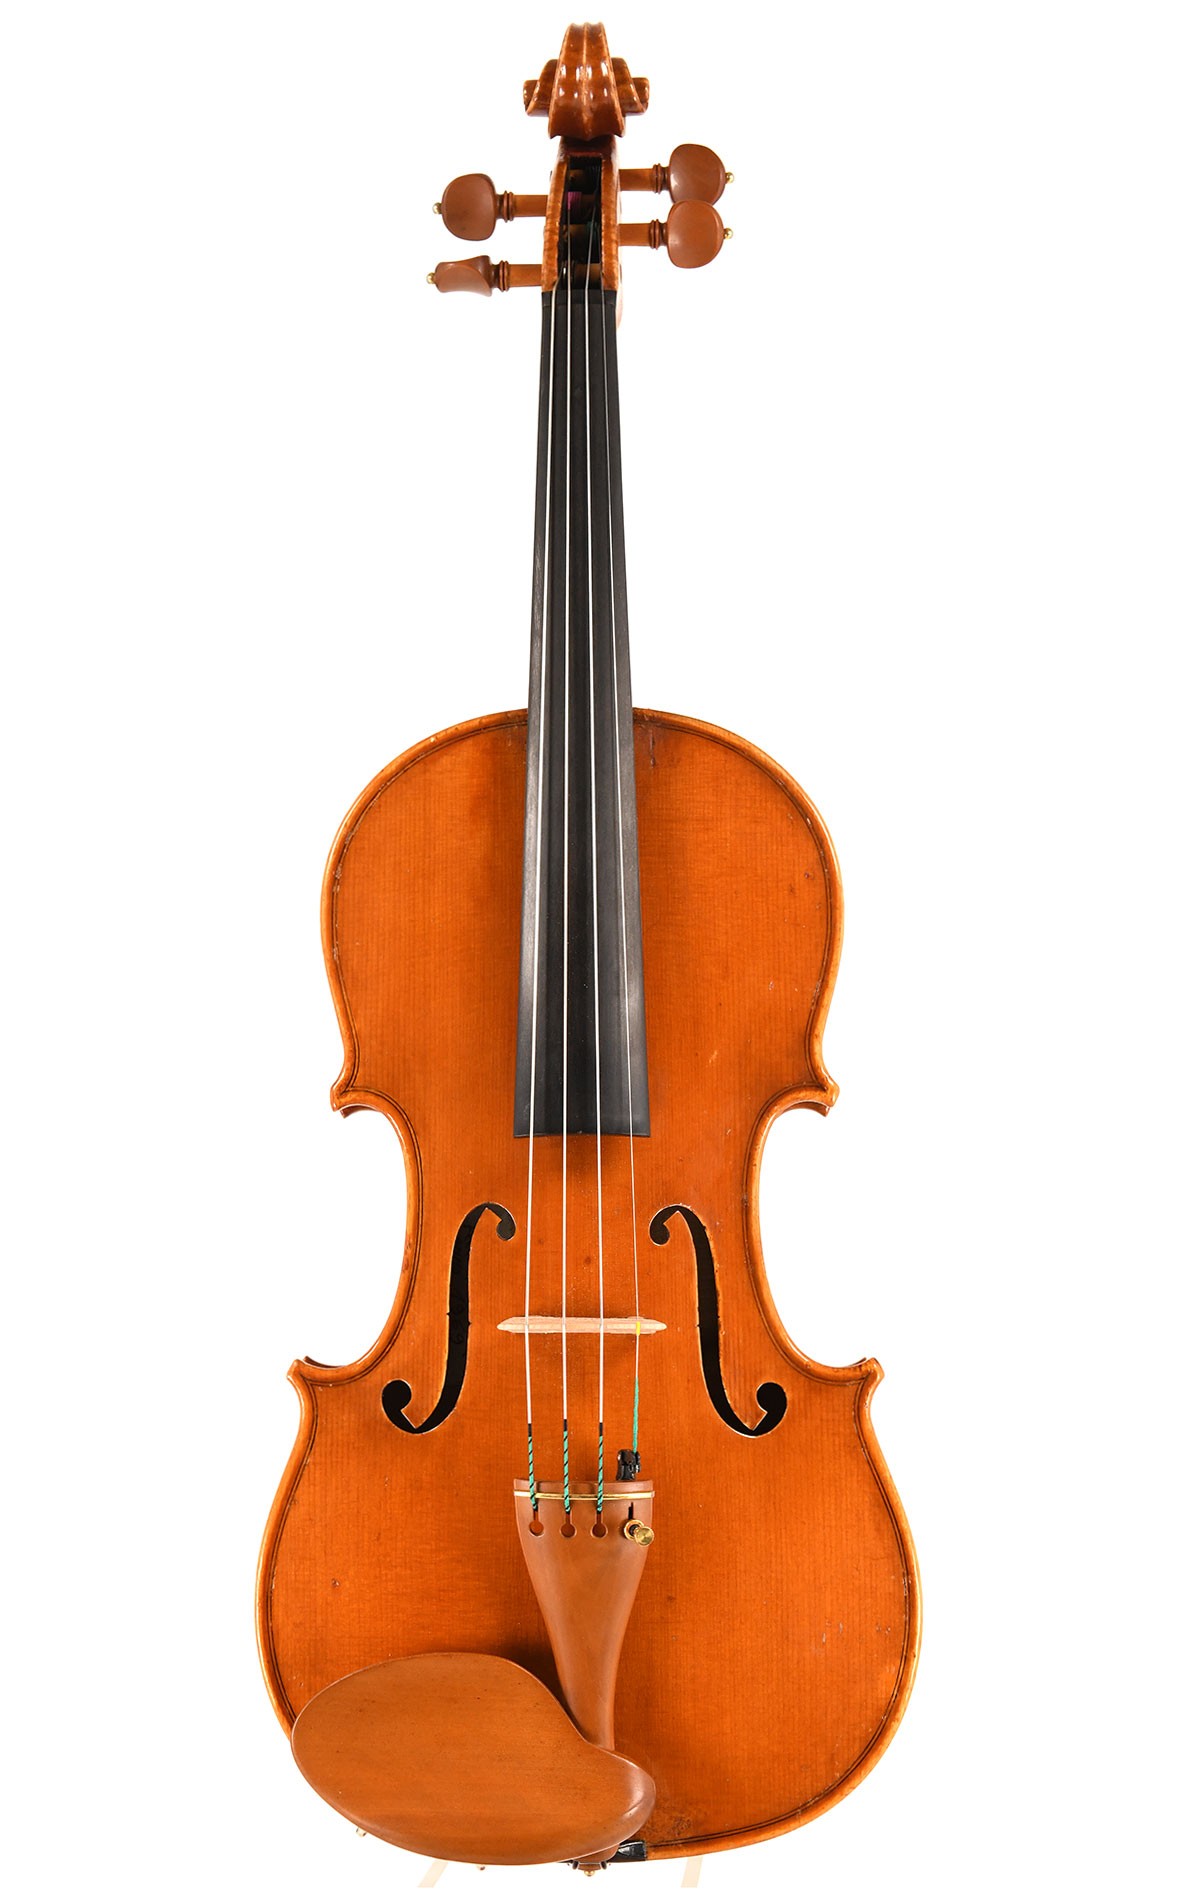 Fillipo Imerio violin made in Cremona